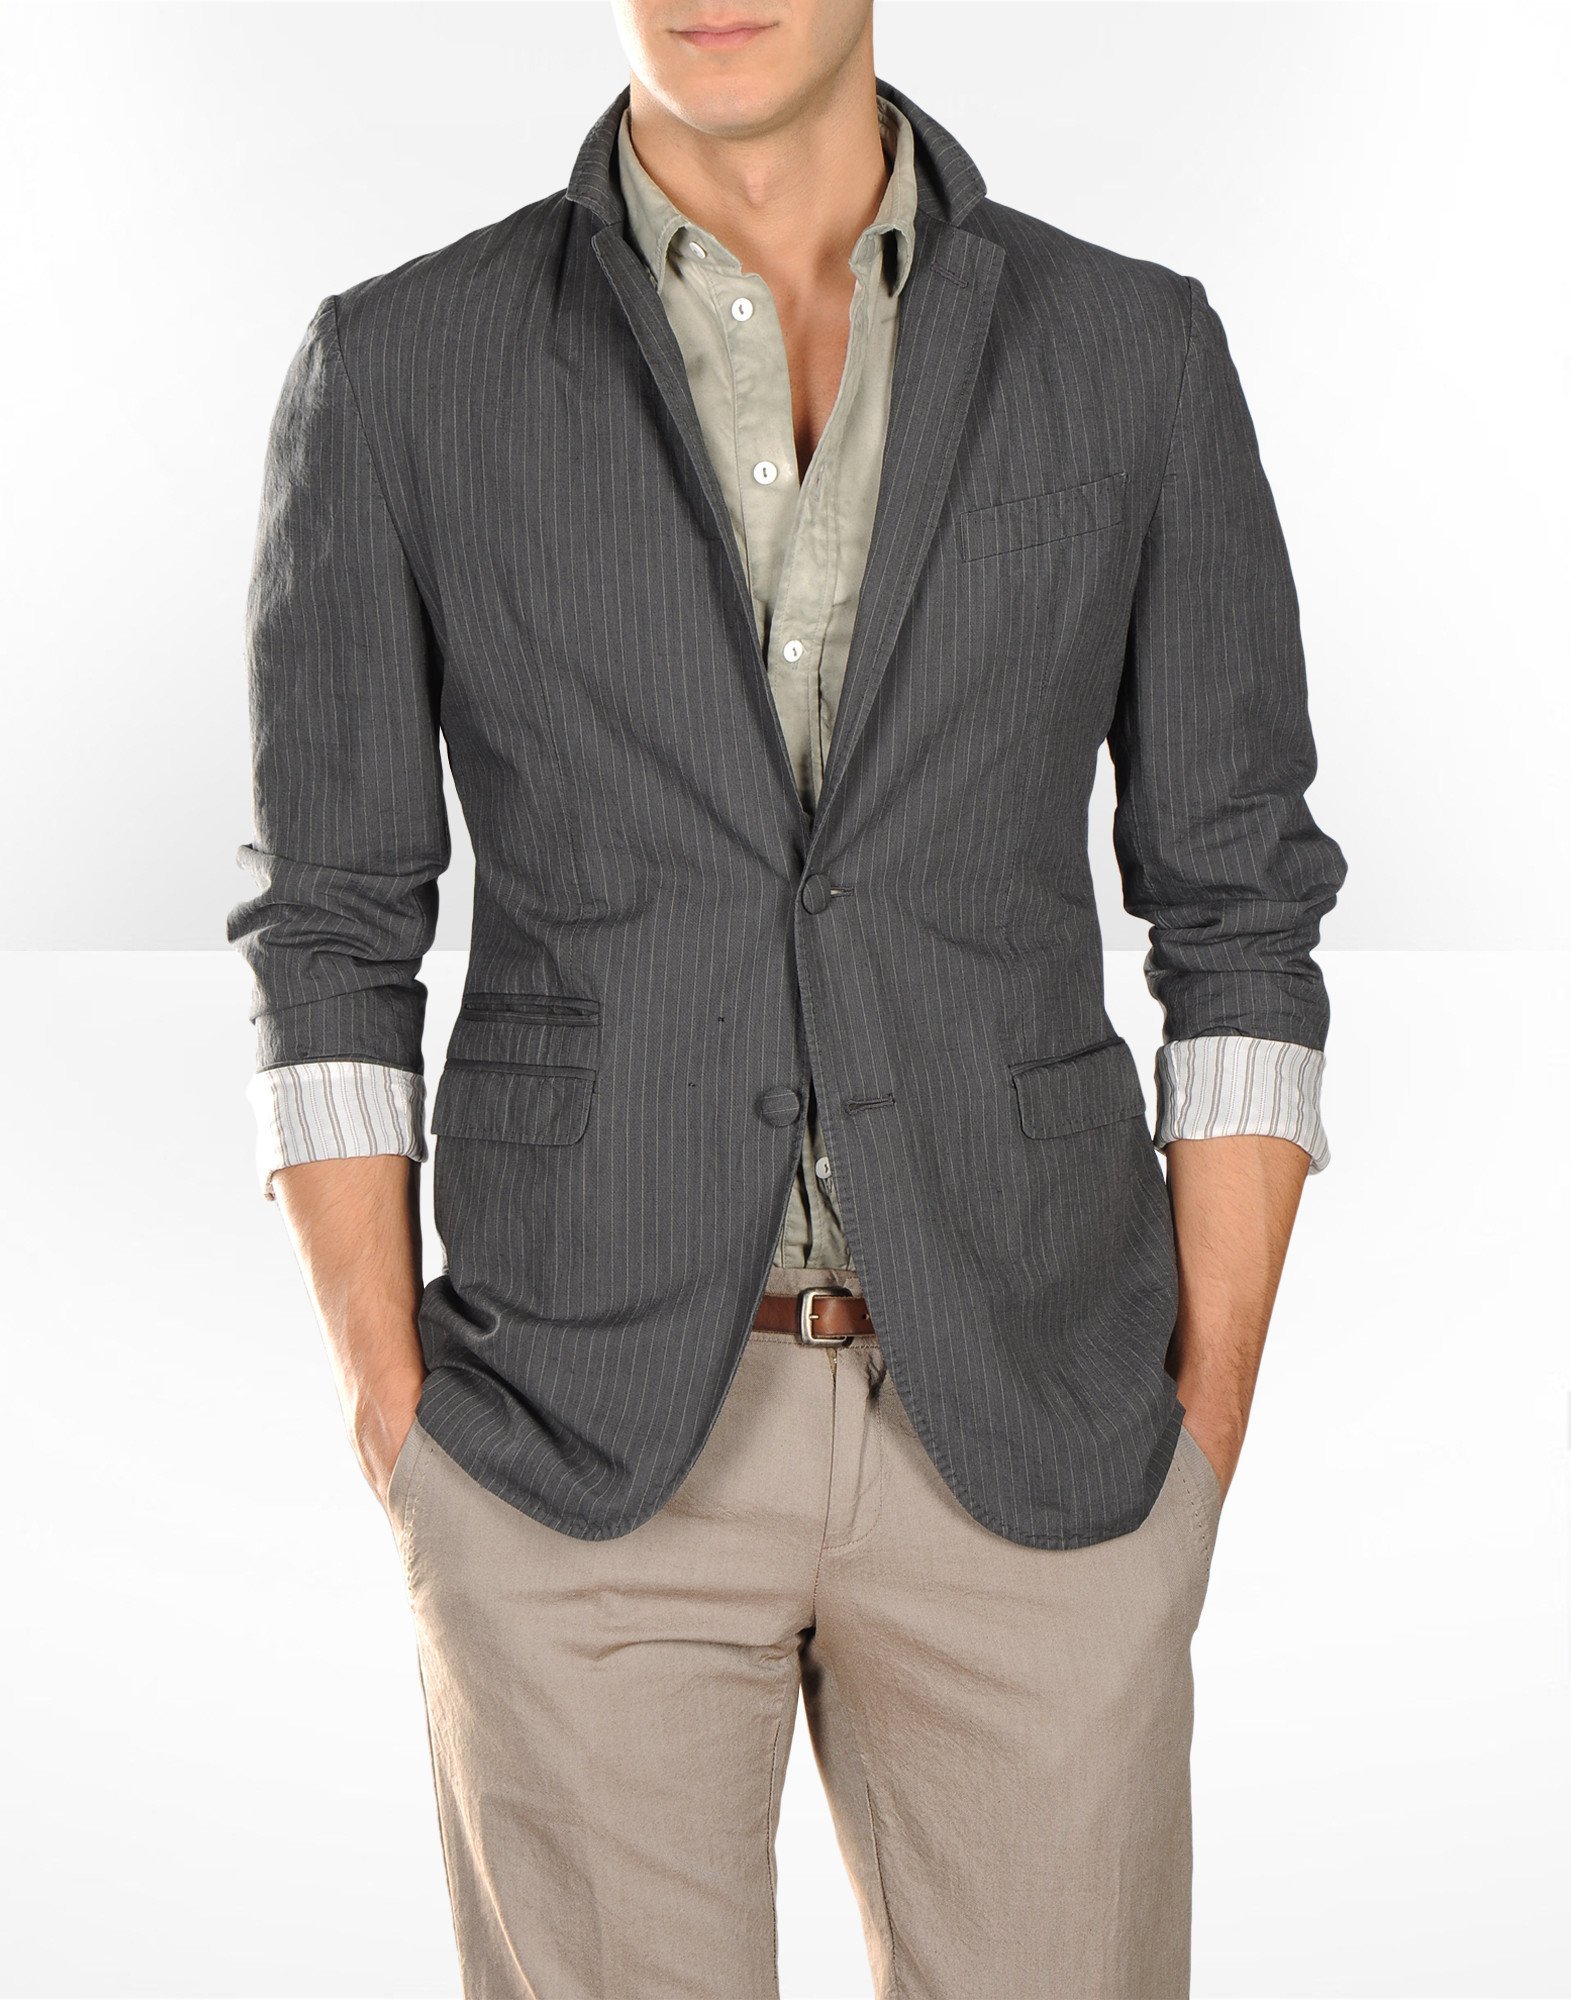 Мужская мода пиджак. Пиджак Blazer 1702. Пиджак мужской. Стильные пиджаки для мужчин. Пиджак с закатанными рукавами мужской.